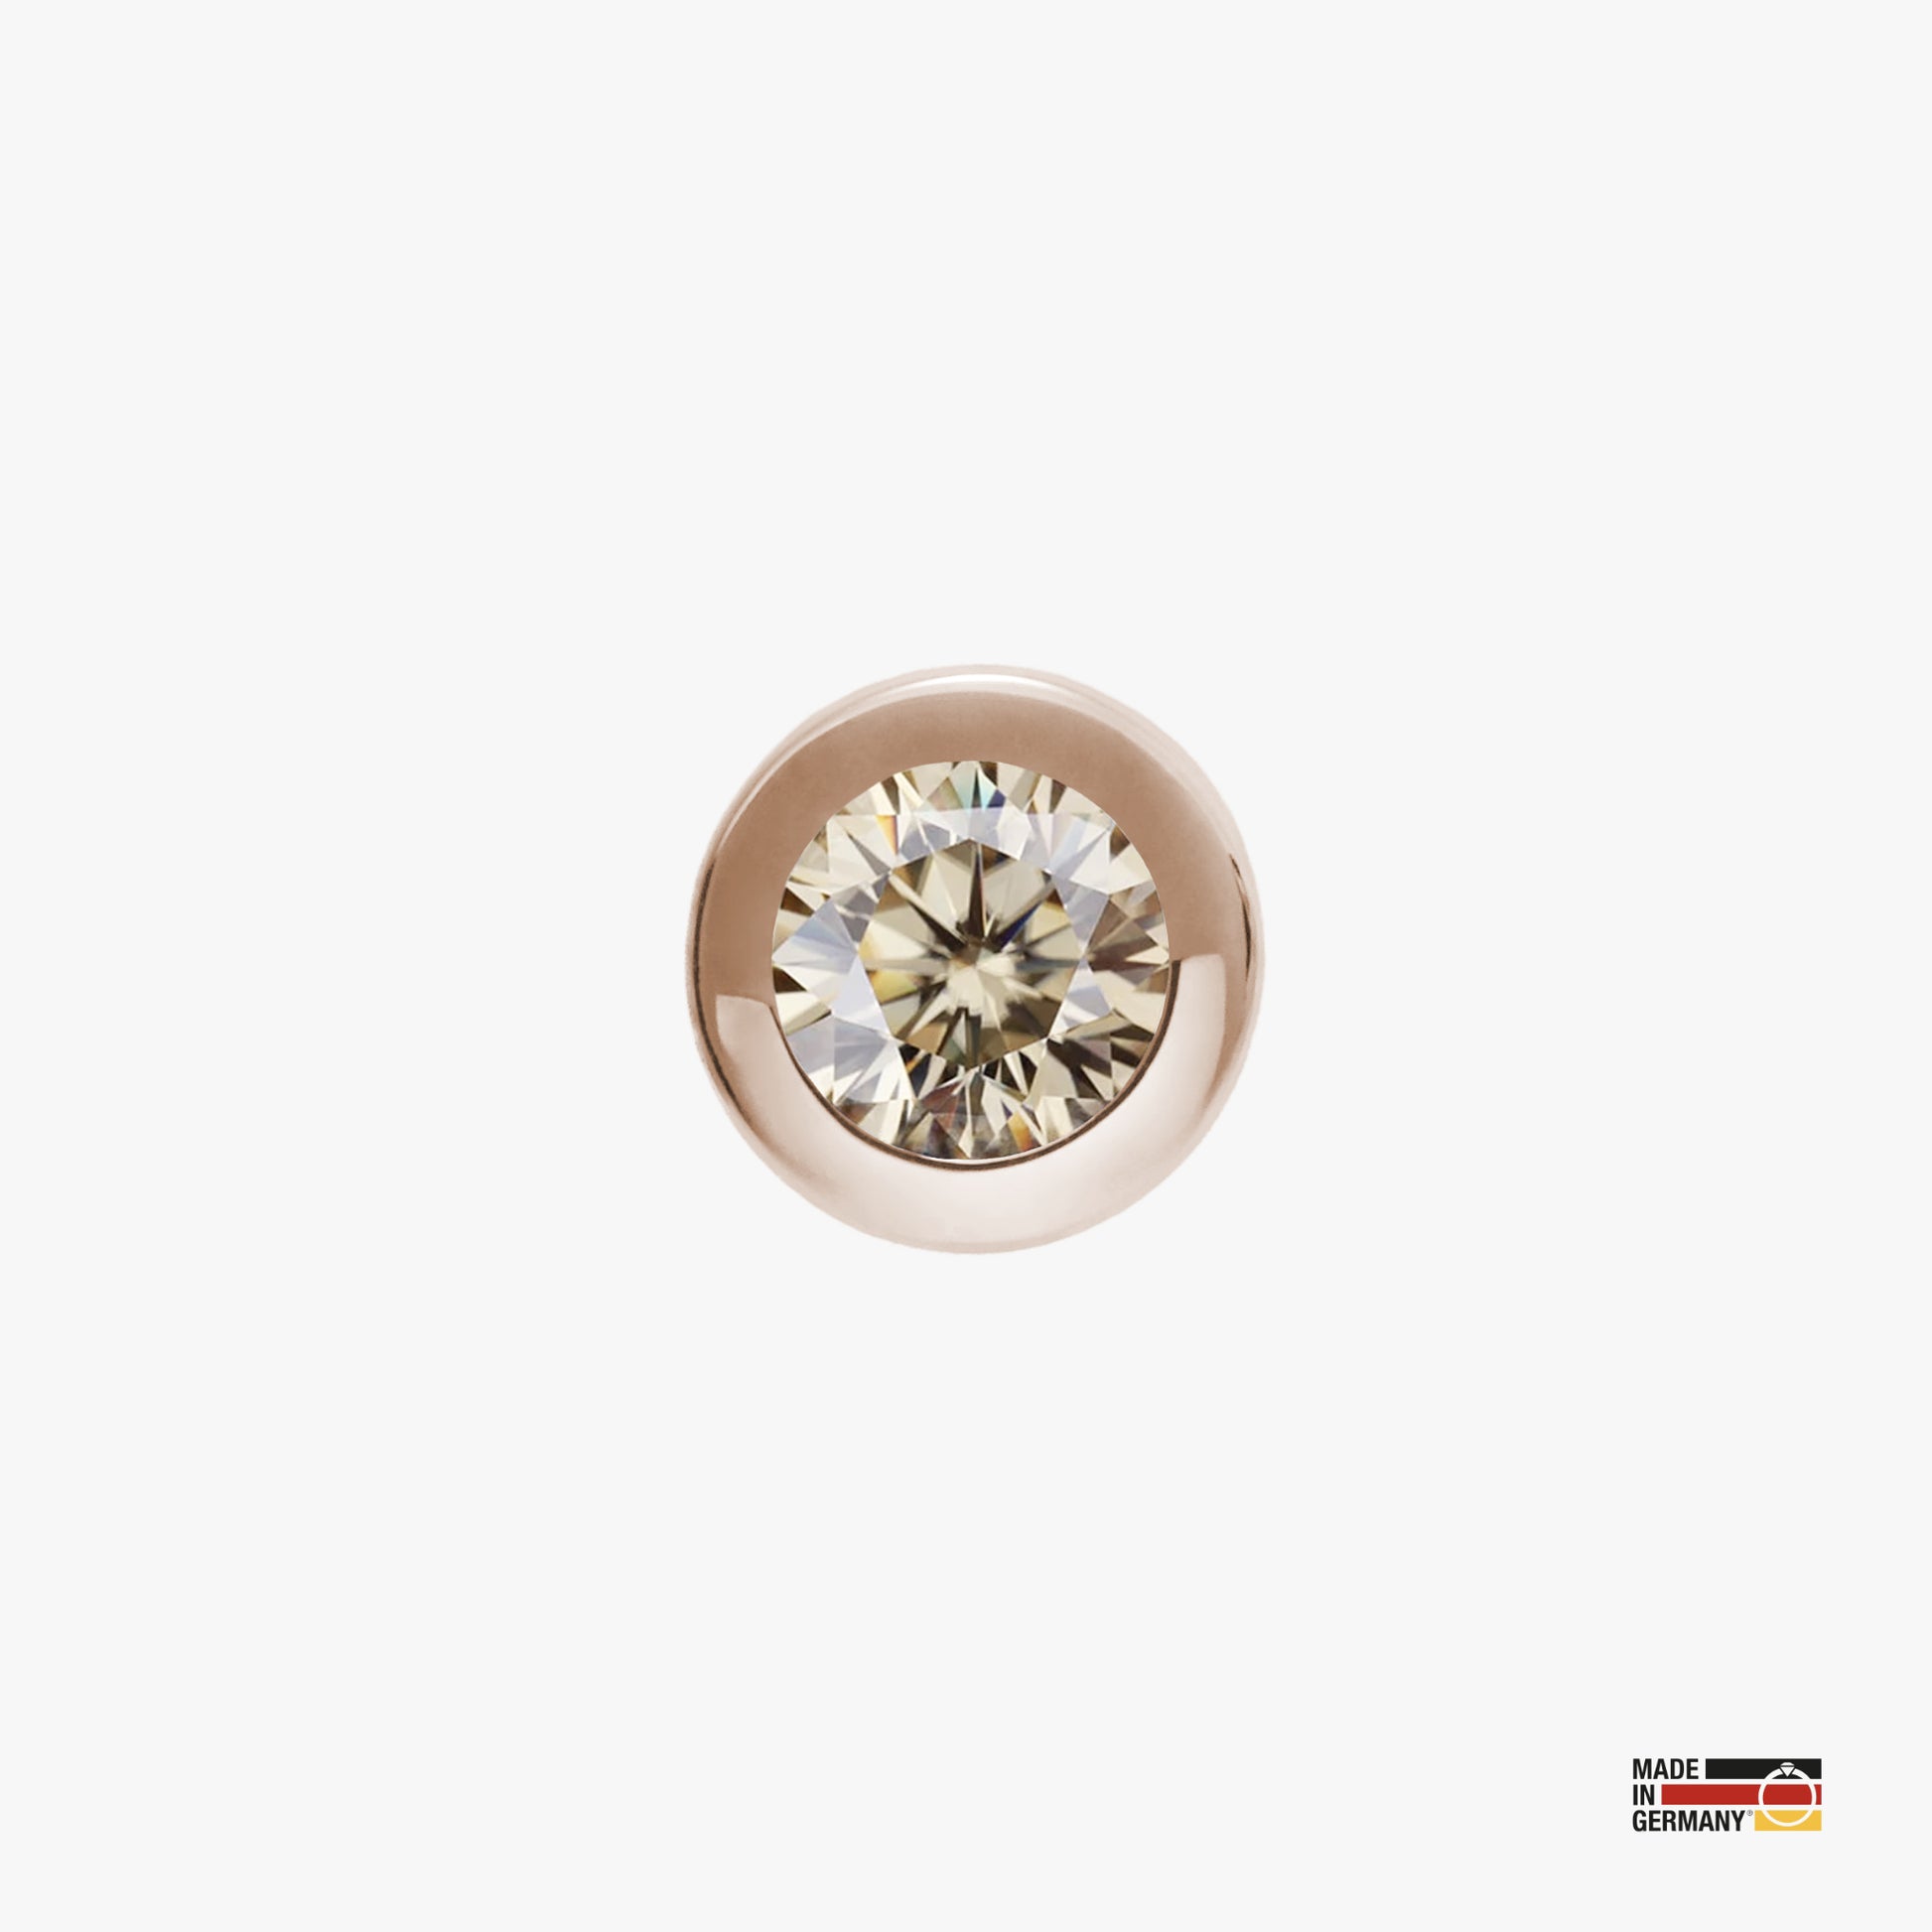 Pamoro® Charm für Apple Watch Sportarmbänder - Schmuck in Silber 24k Roségold plattiert mit Cubic Zirkonia in champagner - Schraubmechanik